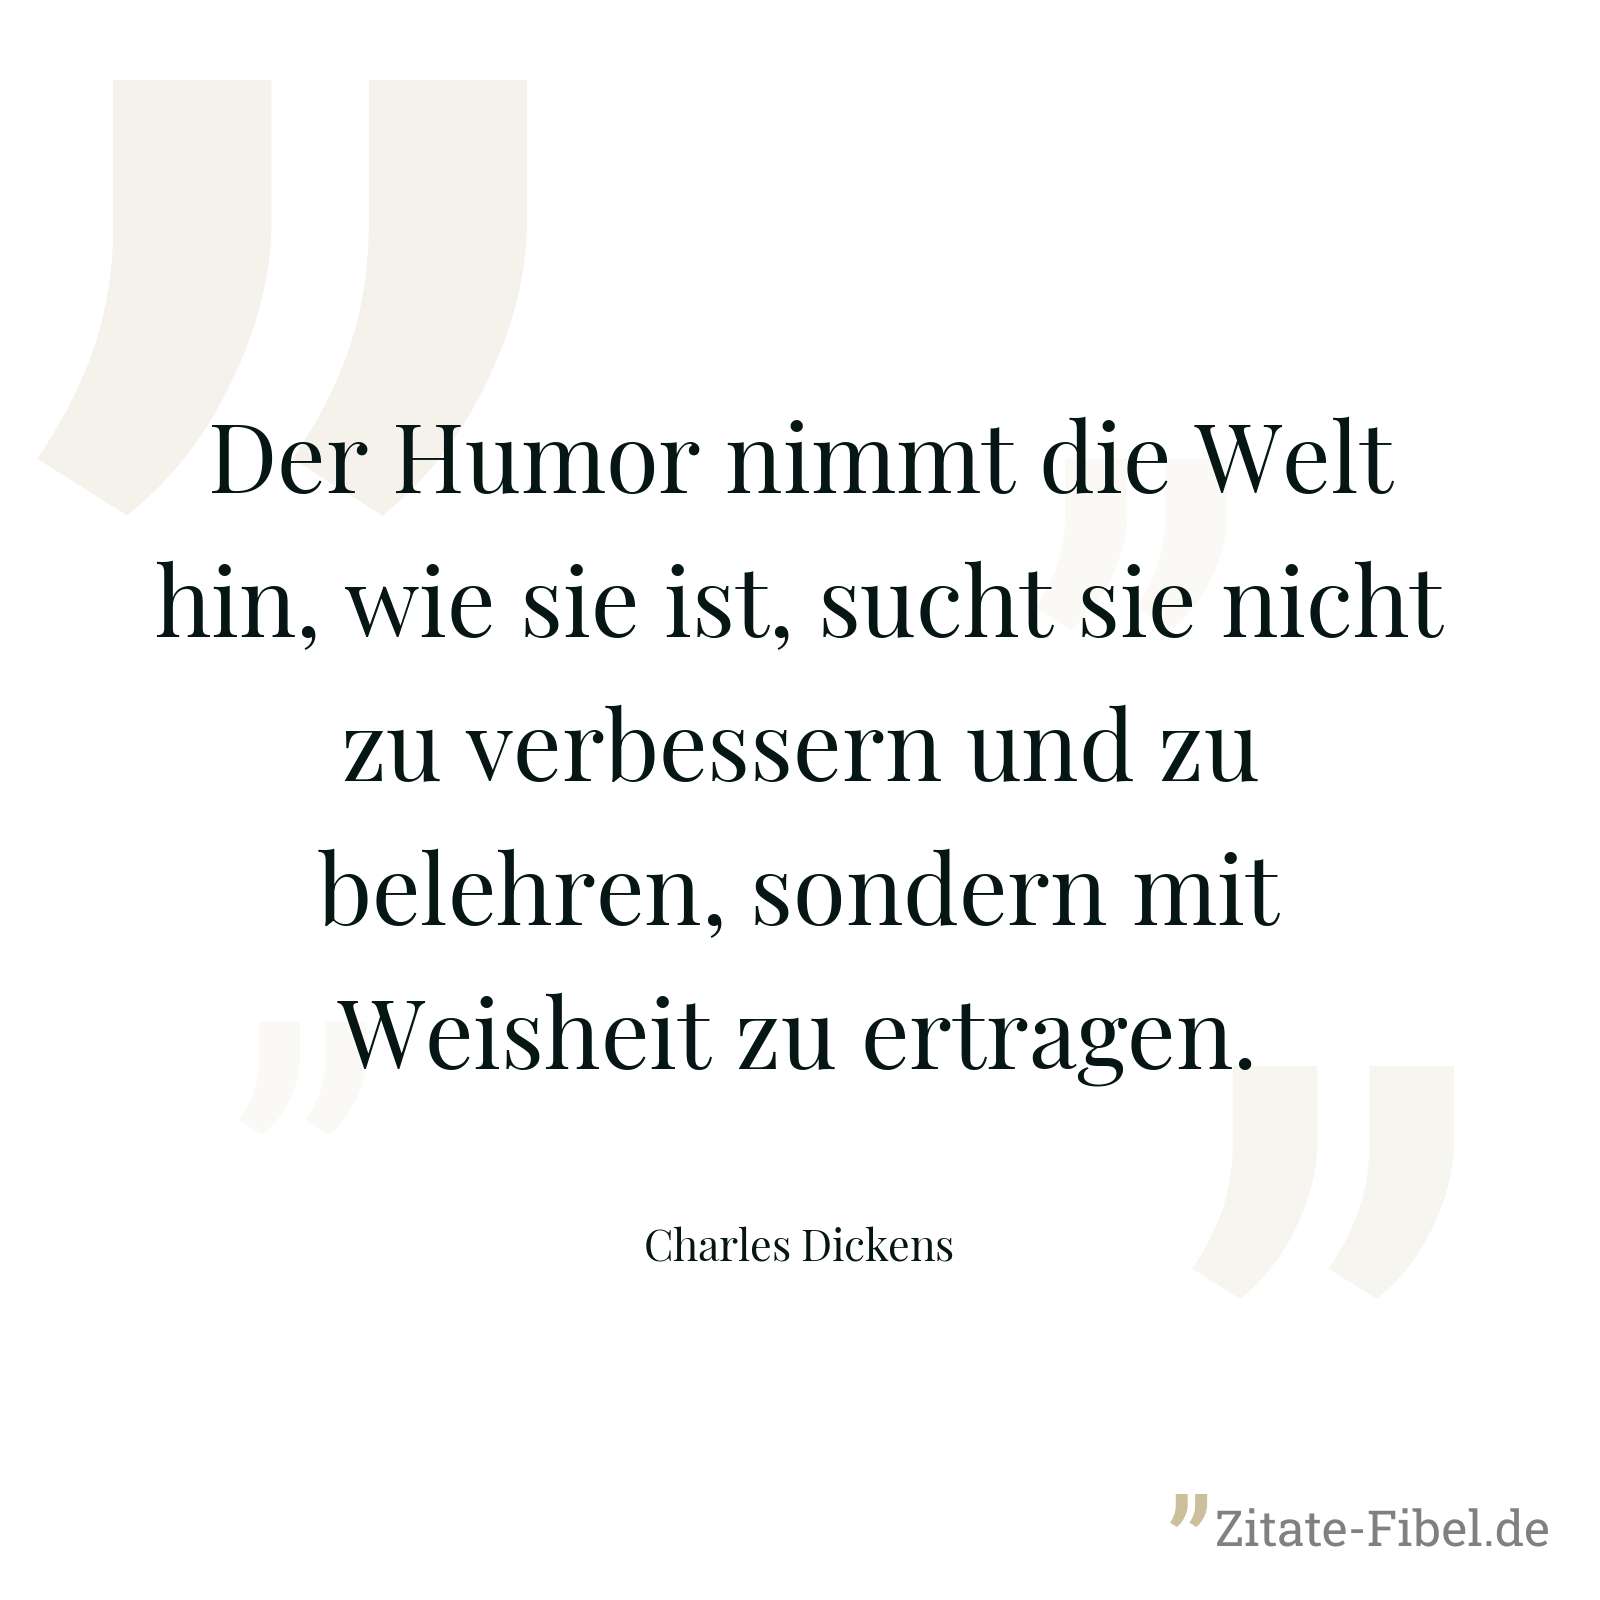 Der Humor nimmt die Welt hin, wie sie ist, sucht sie nicht zu verbessern und zu belehren, sondern mit Weisheit zu ertragen. - Charles Dickens